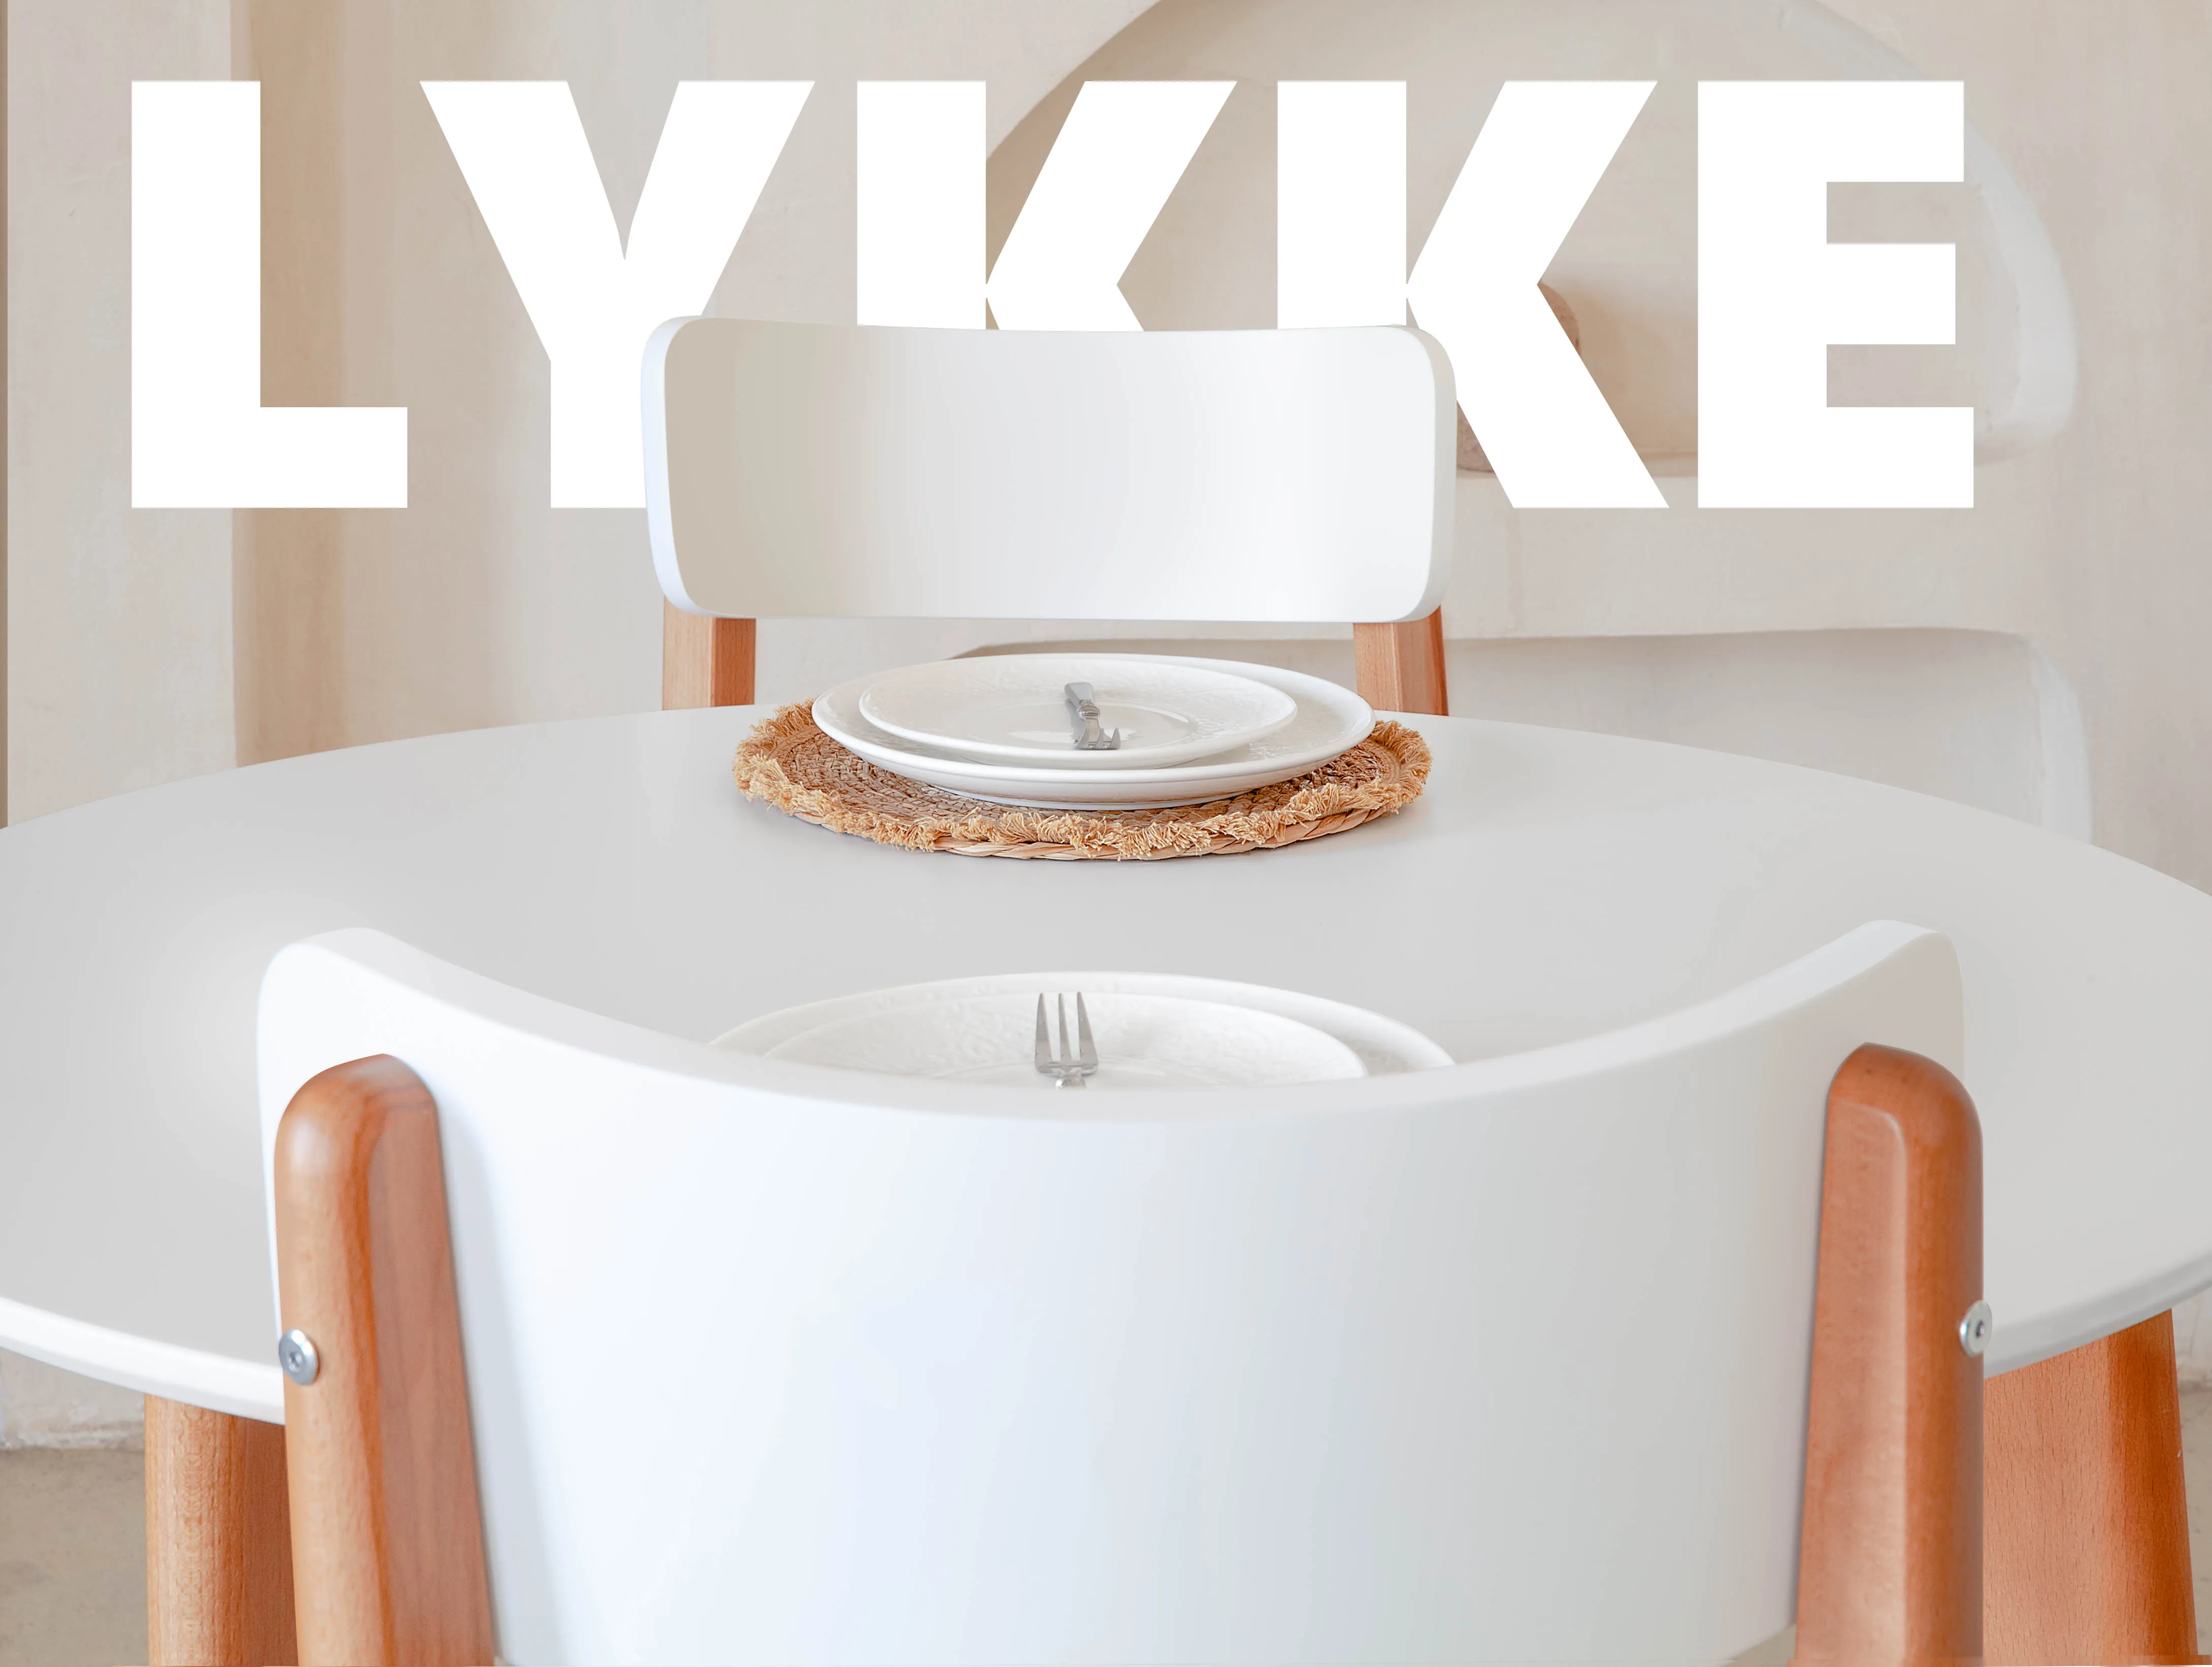 Комплект стульев Skyland LYKKE CE-2 прямые ножки 2 шт.